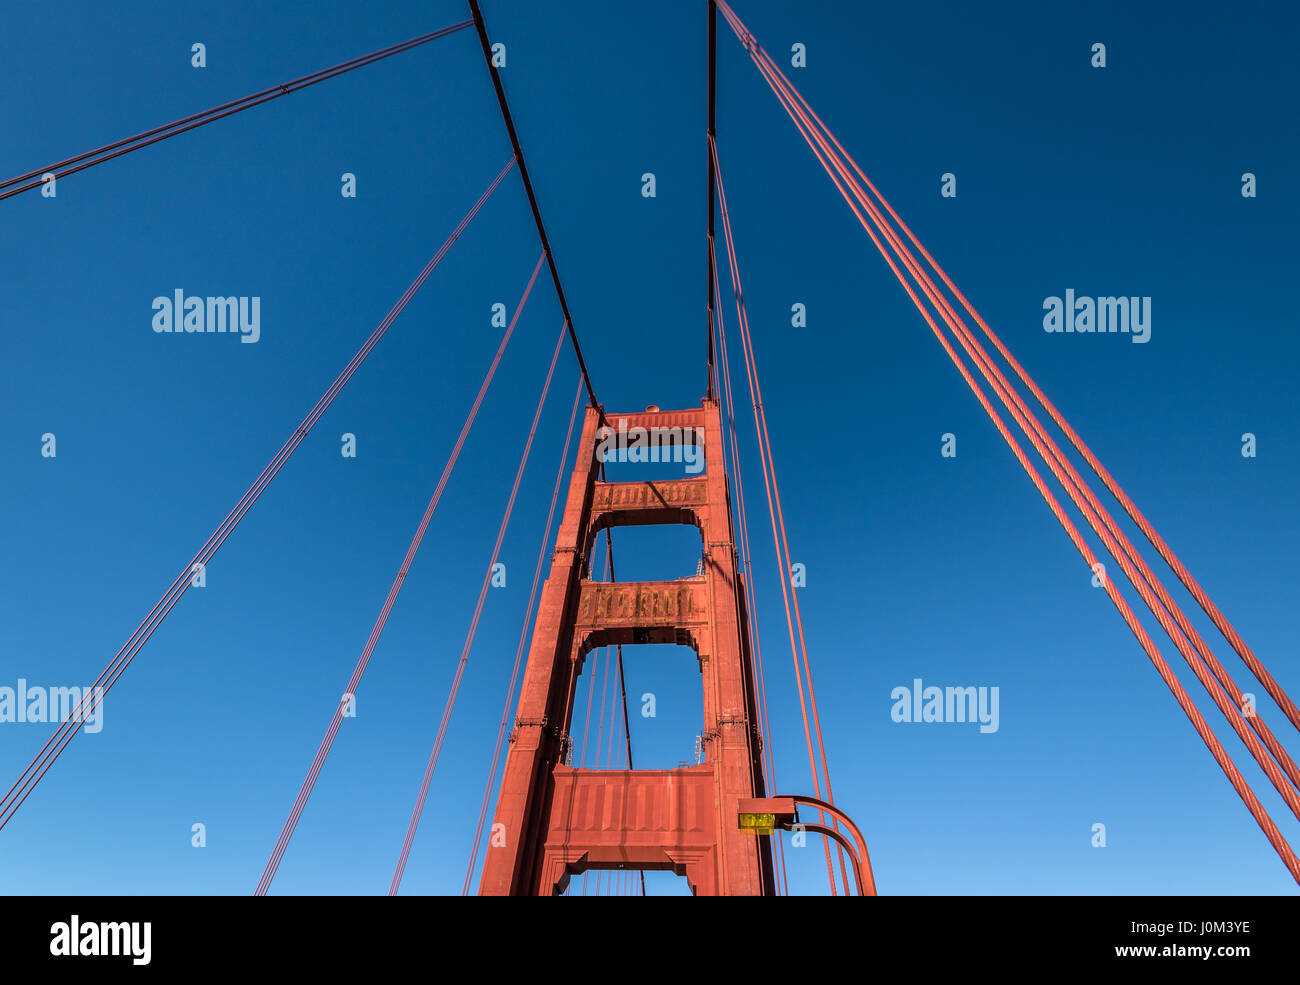 Dettaglio del Golden Gate Bridge - San Francisco, California, Stati Uniti d'America Foto Stock